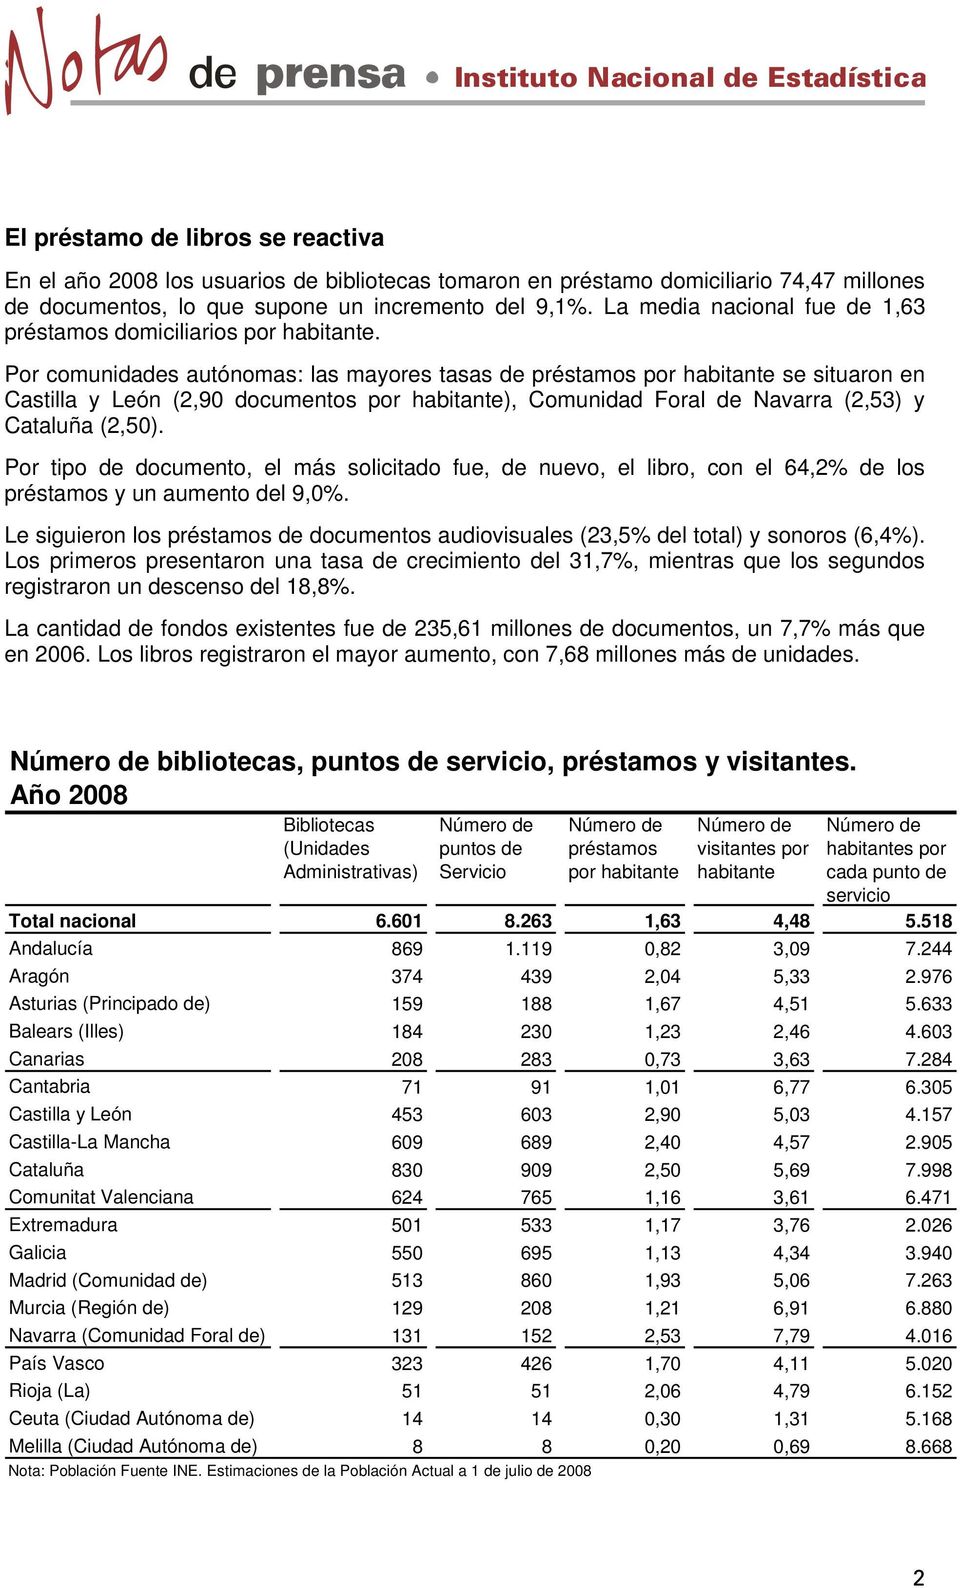 Por comunidades autónomas: las mayores tasas de préstamos por habitante se situaron en Castilla y León (2,90 documentos por habitante), Comunidad Foral de Navarra (2,53) y Cataluña (2,50).